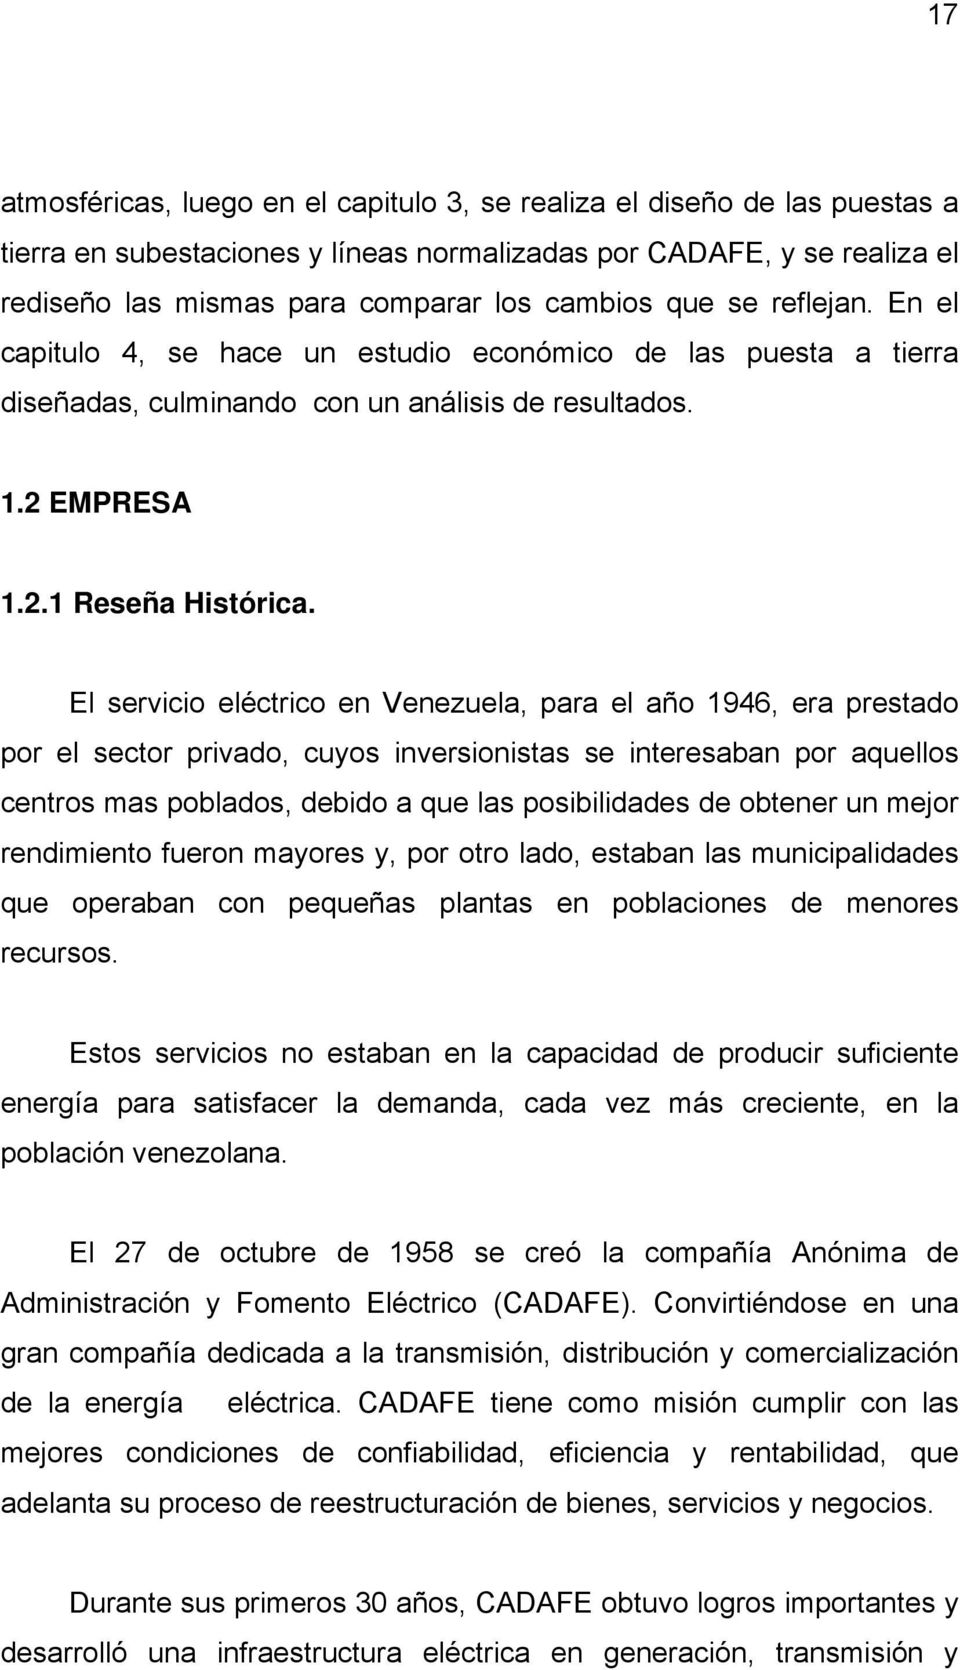 El servicio eléctrico en Venezuela, para el año 1946, era prestado por el sector privado, cuyos inversionistas se interesaban por aquellos centros mas poblados, debido a que las posibilidades de